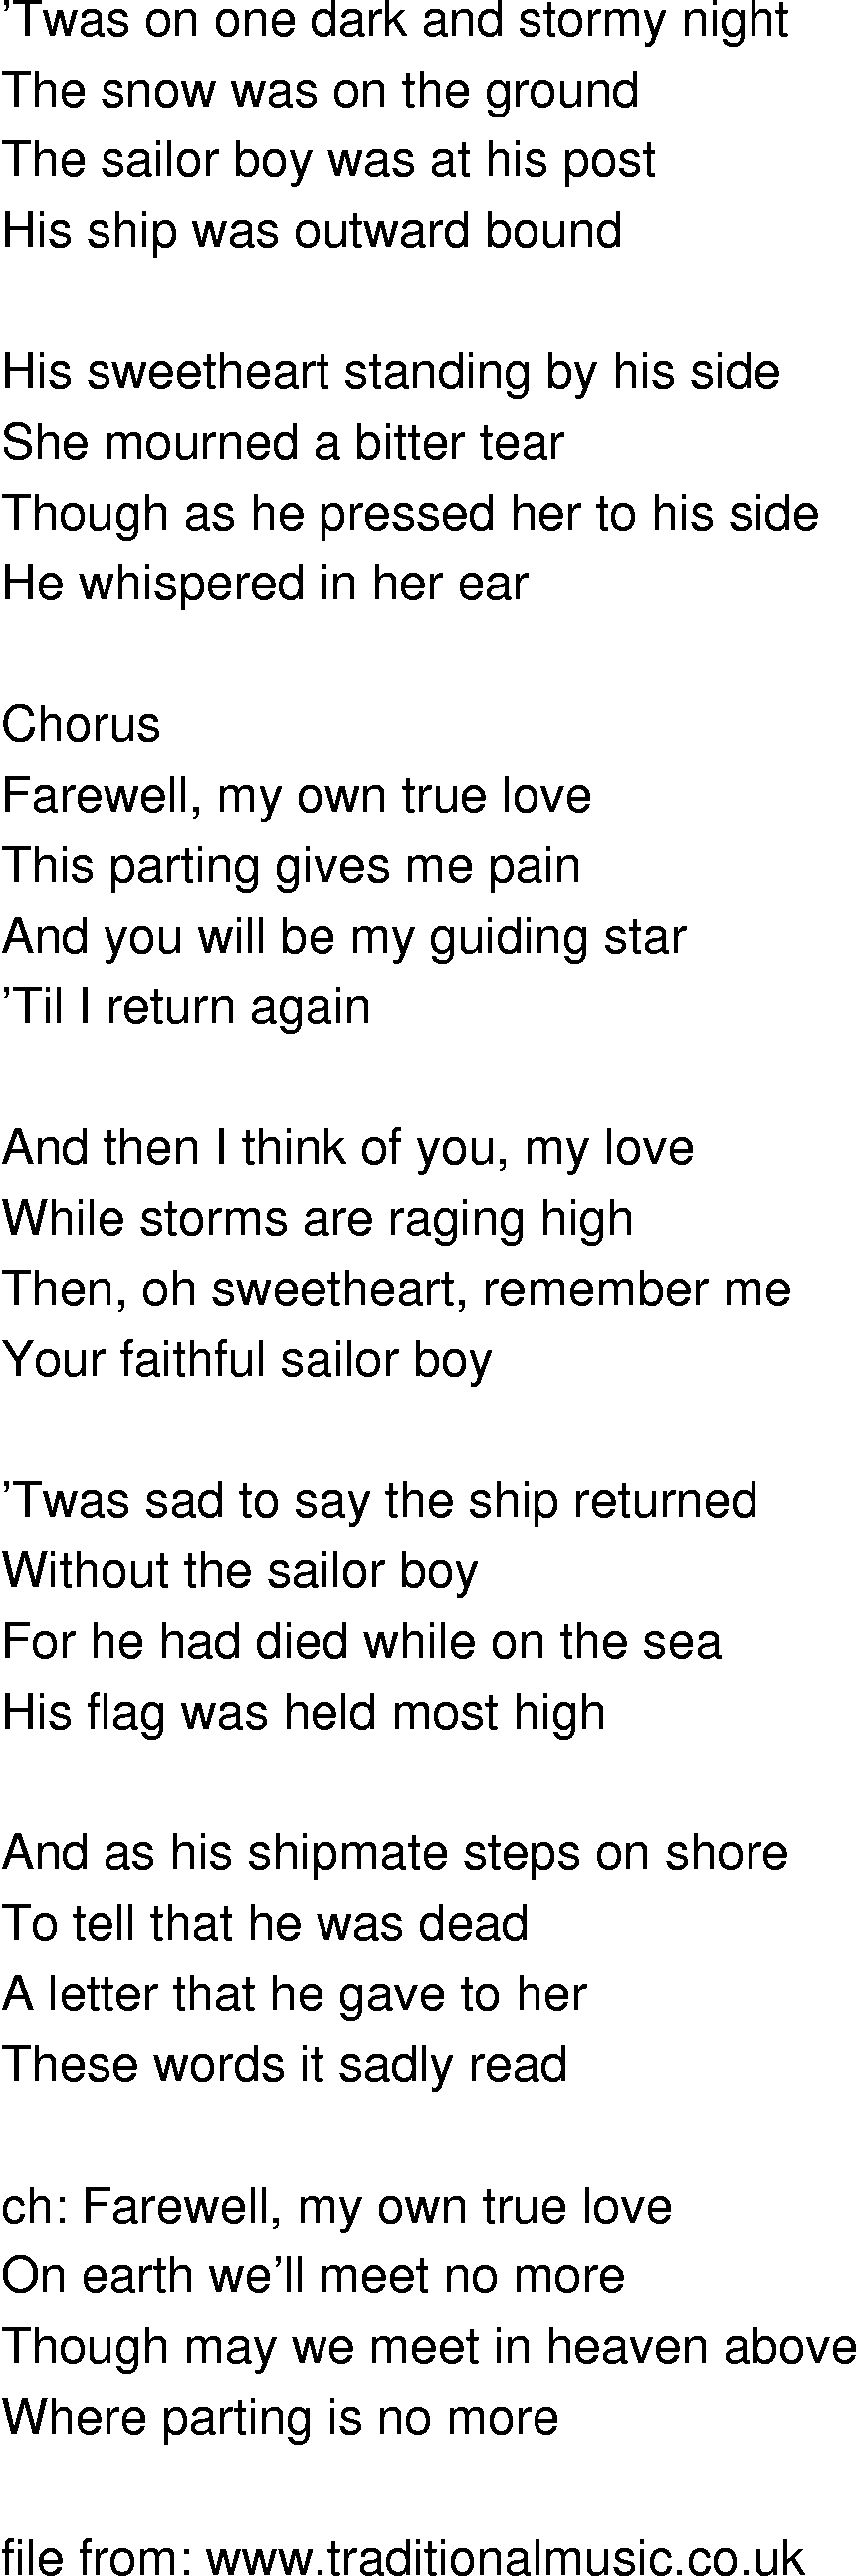 Old-Time (oldtimey) Song Lyrics - sailor boys farewell